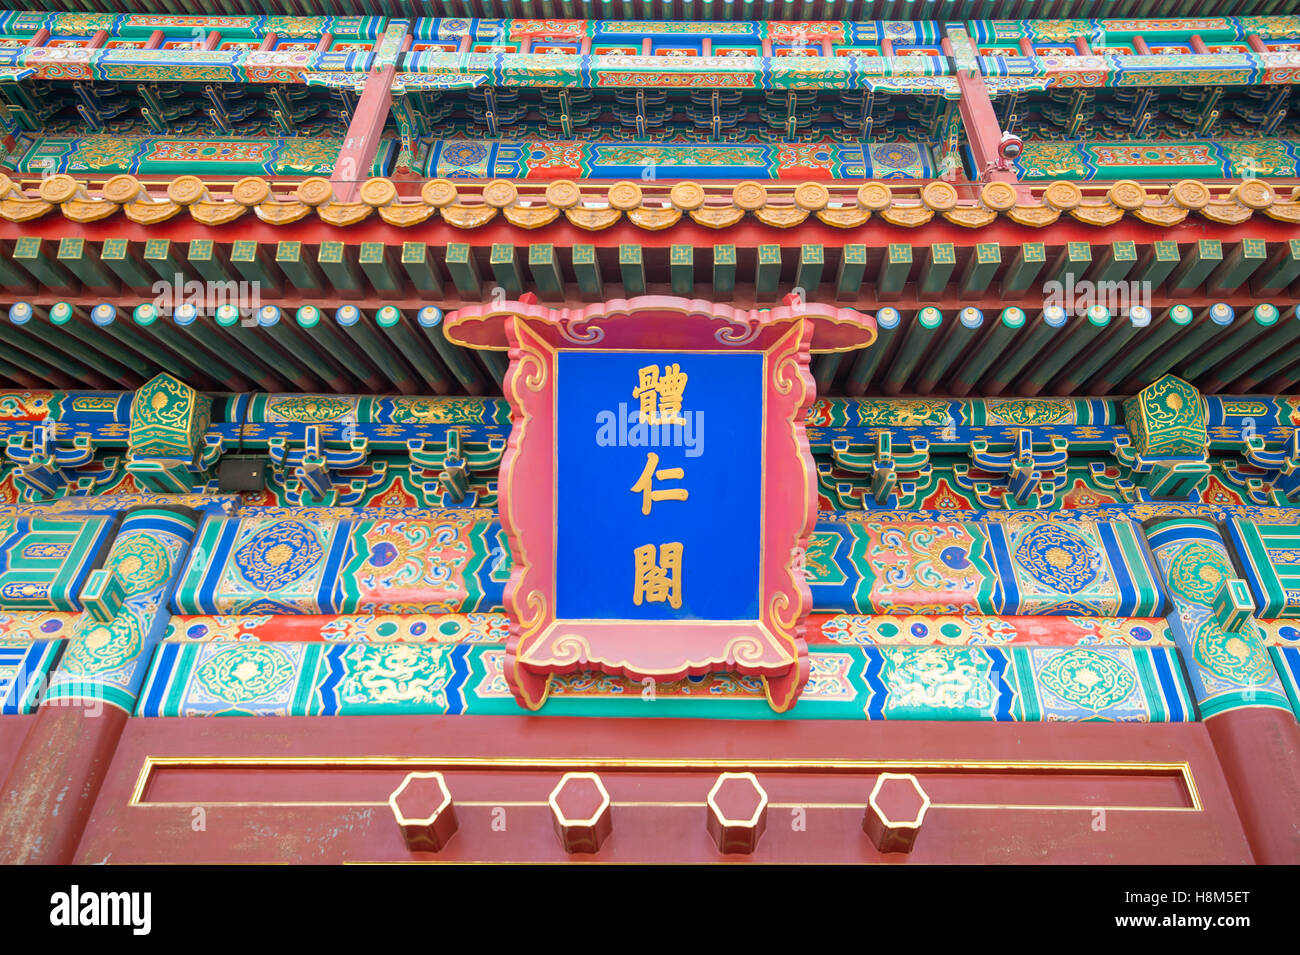 Pechino Cina - dettaglio del tetto ornato e architettura del Museo Palazzo situato nella Città Proibita. Foto Stock